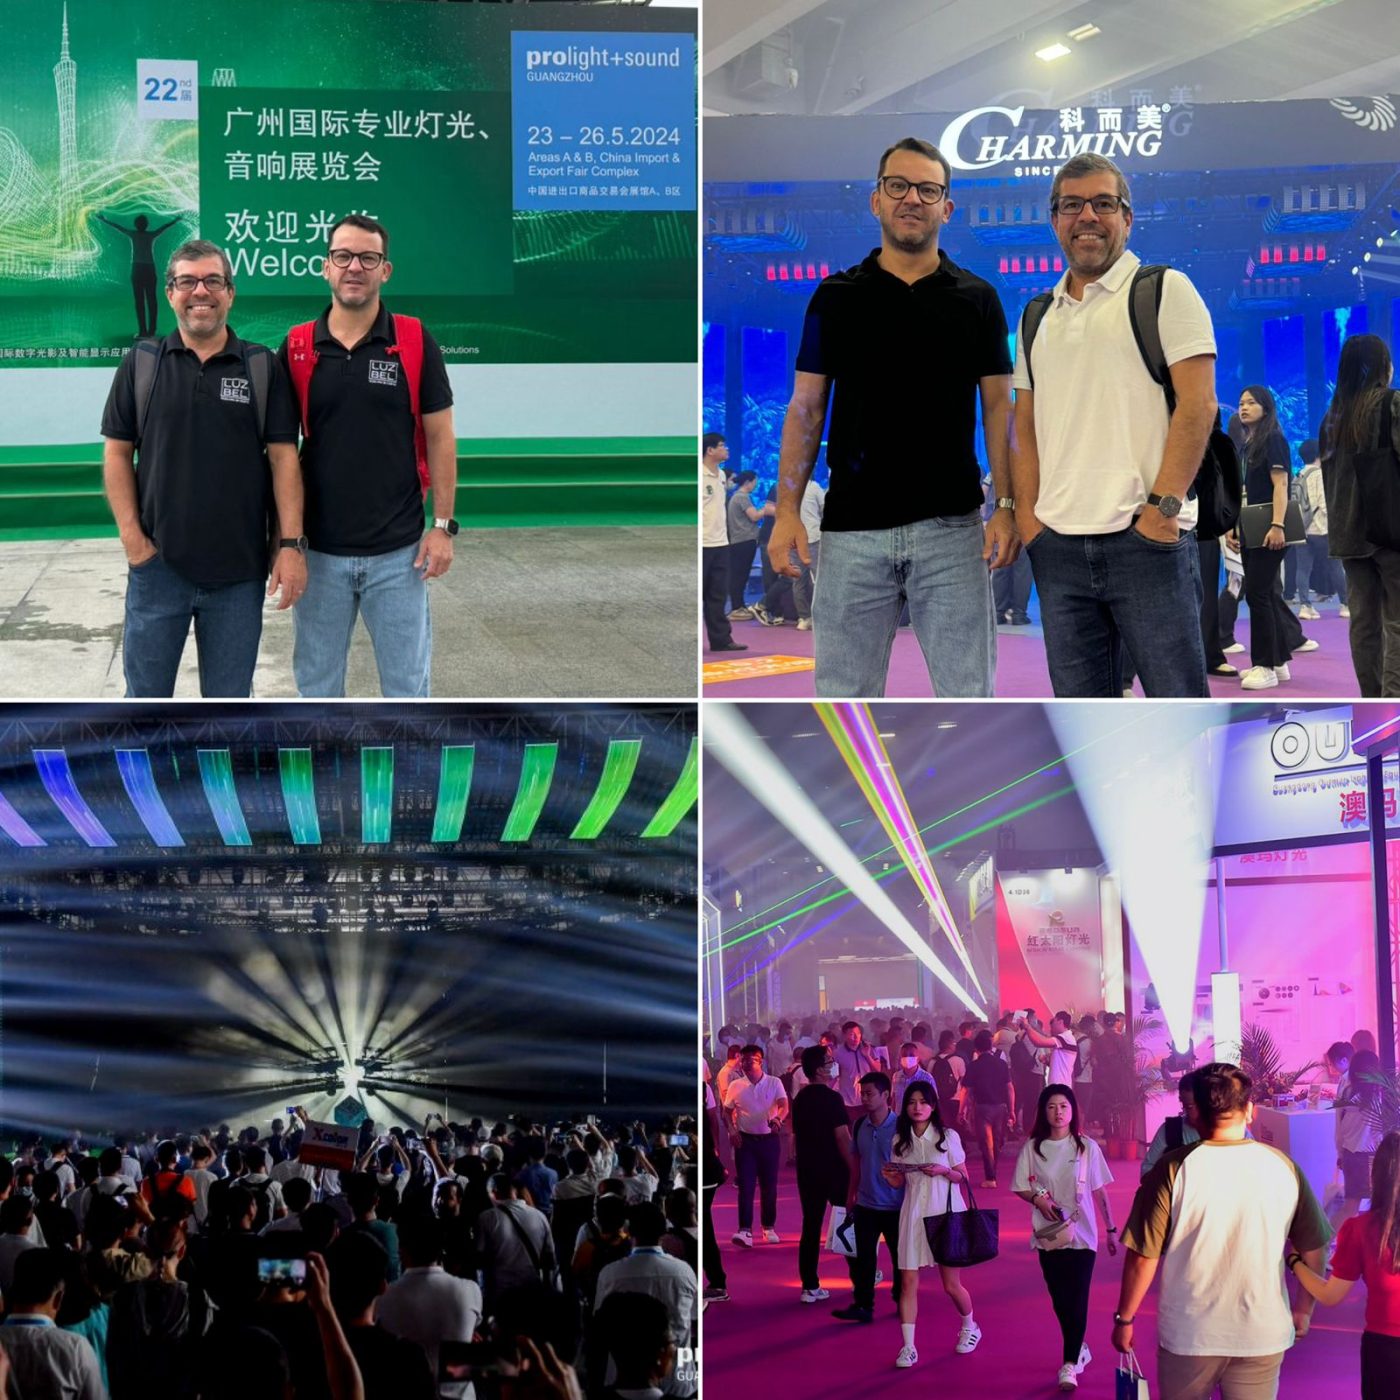 Empresários baianos vão a China para principal evento de áudio e iluminação do mundo